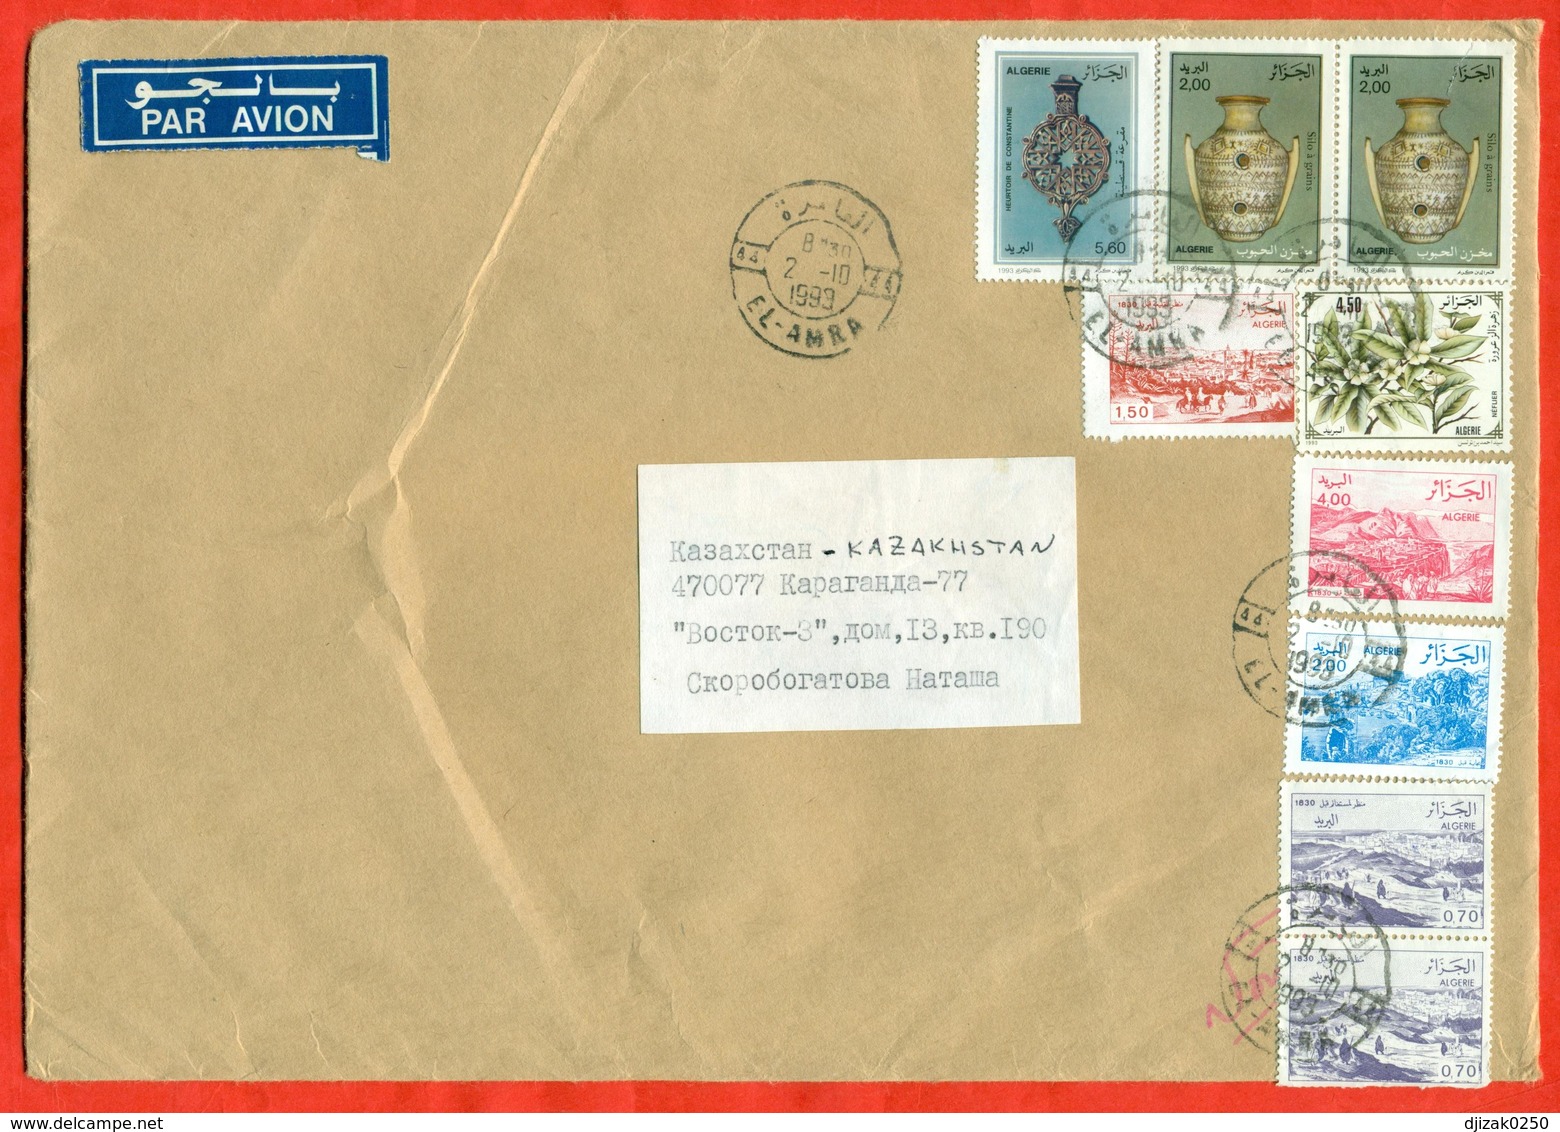 Algeria 1993.National Craft. Envelope Passed The Mail. Airmail. - Algeria (1962-...)